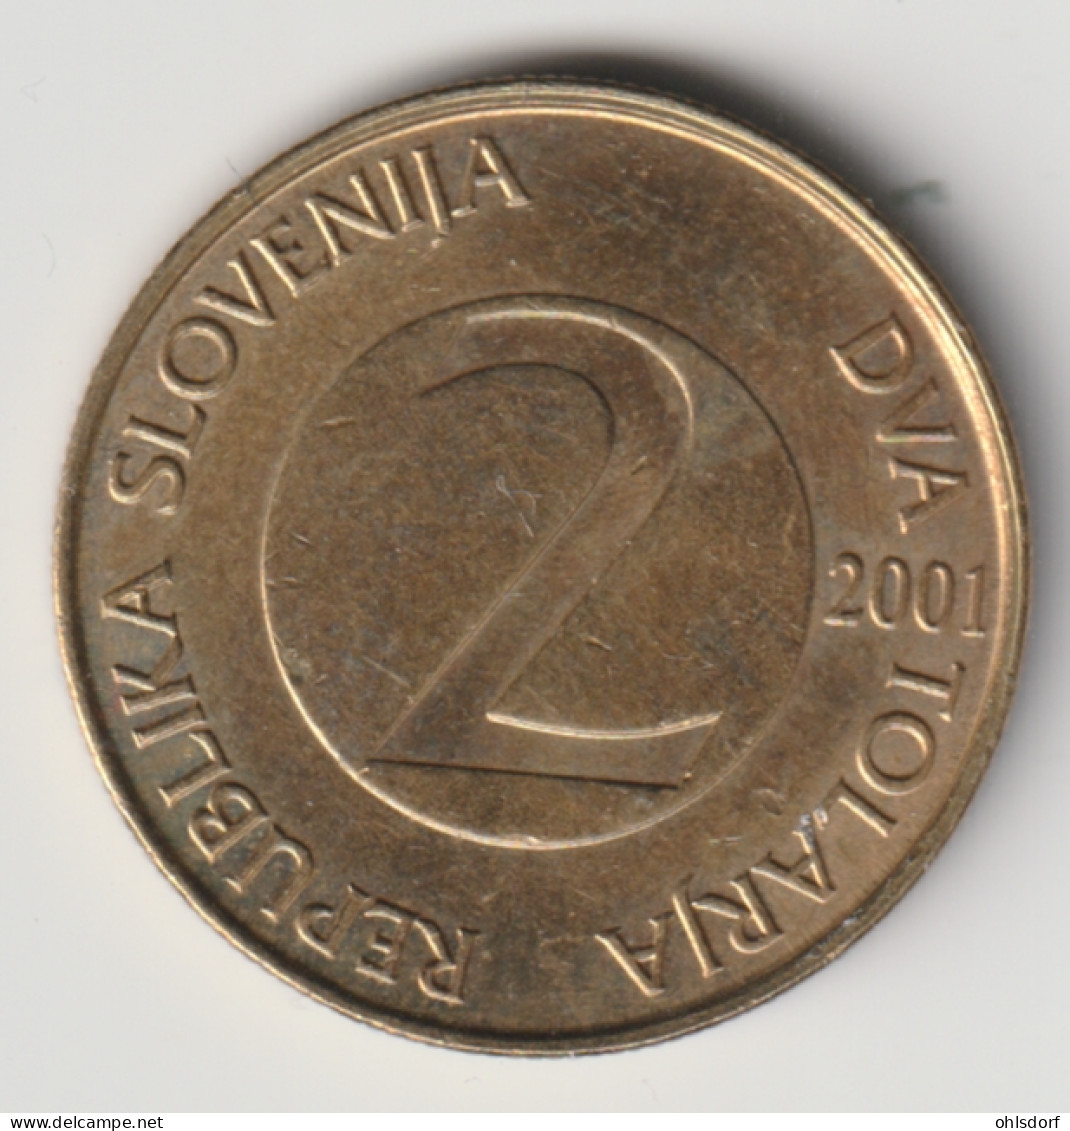 SLOVENIA 2001: 1 Tolar, KM 5 - Slovenië